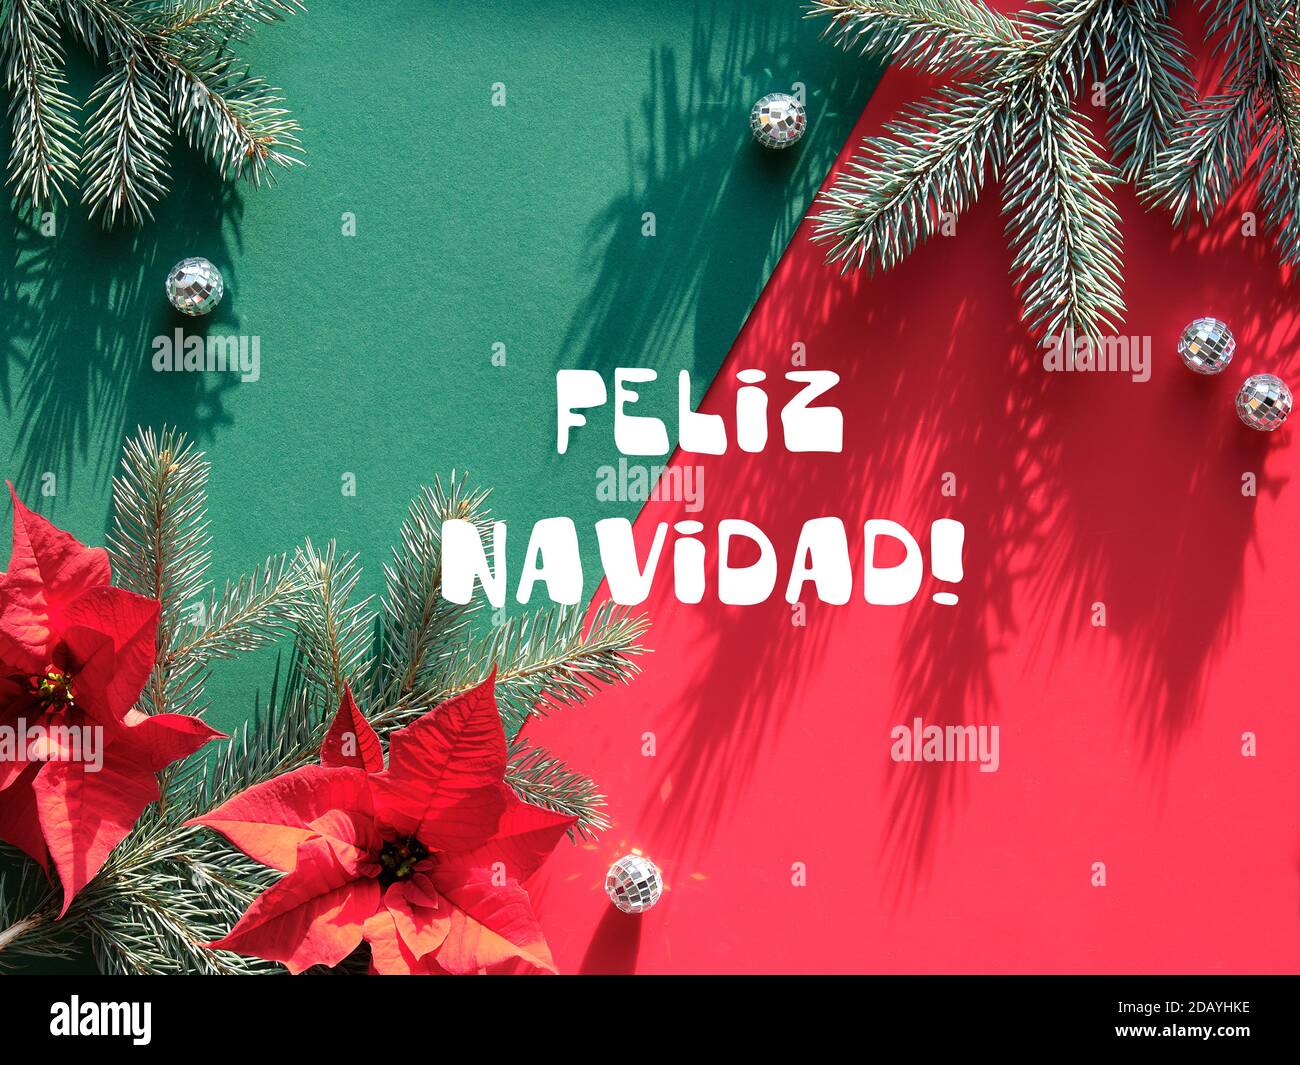 Feliz Navidad ist Frohe Weihnachten in spanischer Sprache. Weihnachten Hintergrund in rot und grün, Schatten. Stockfoto